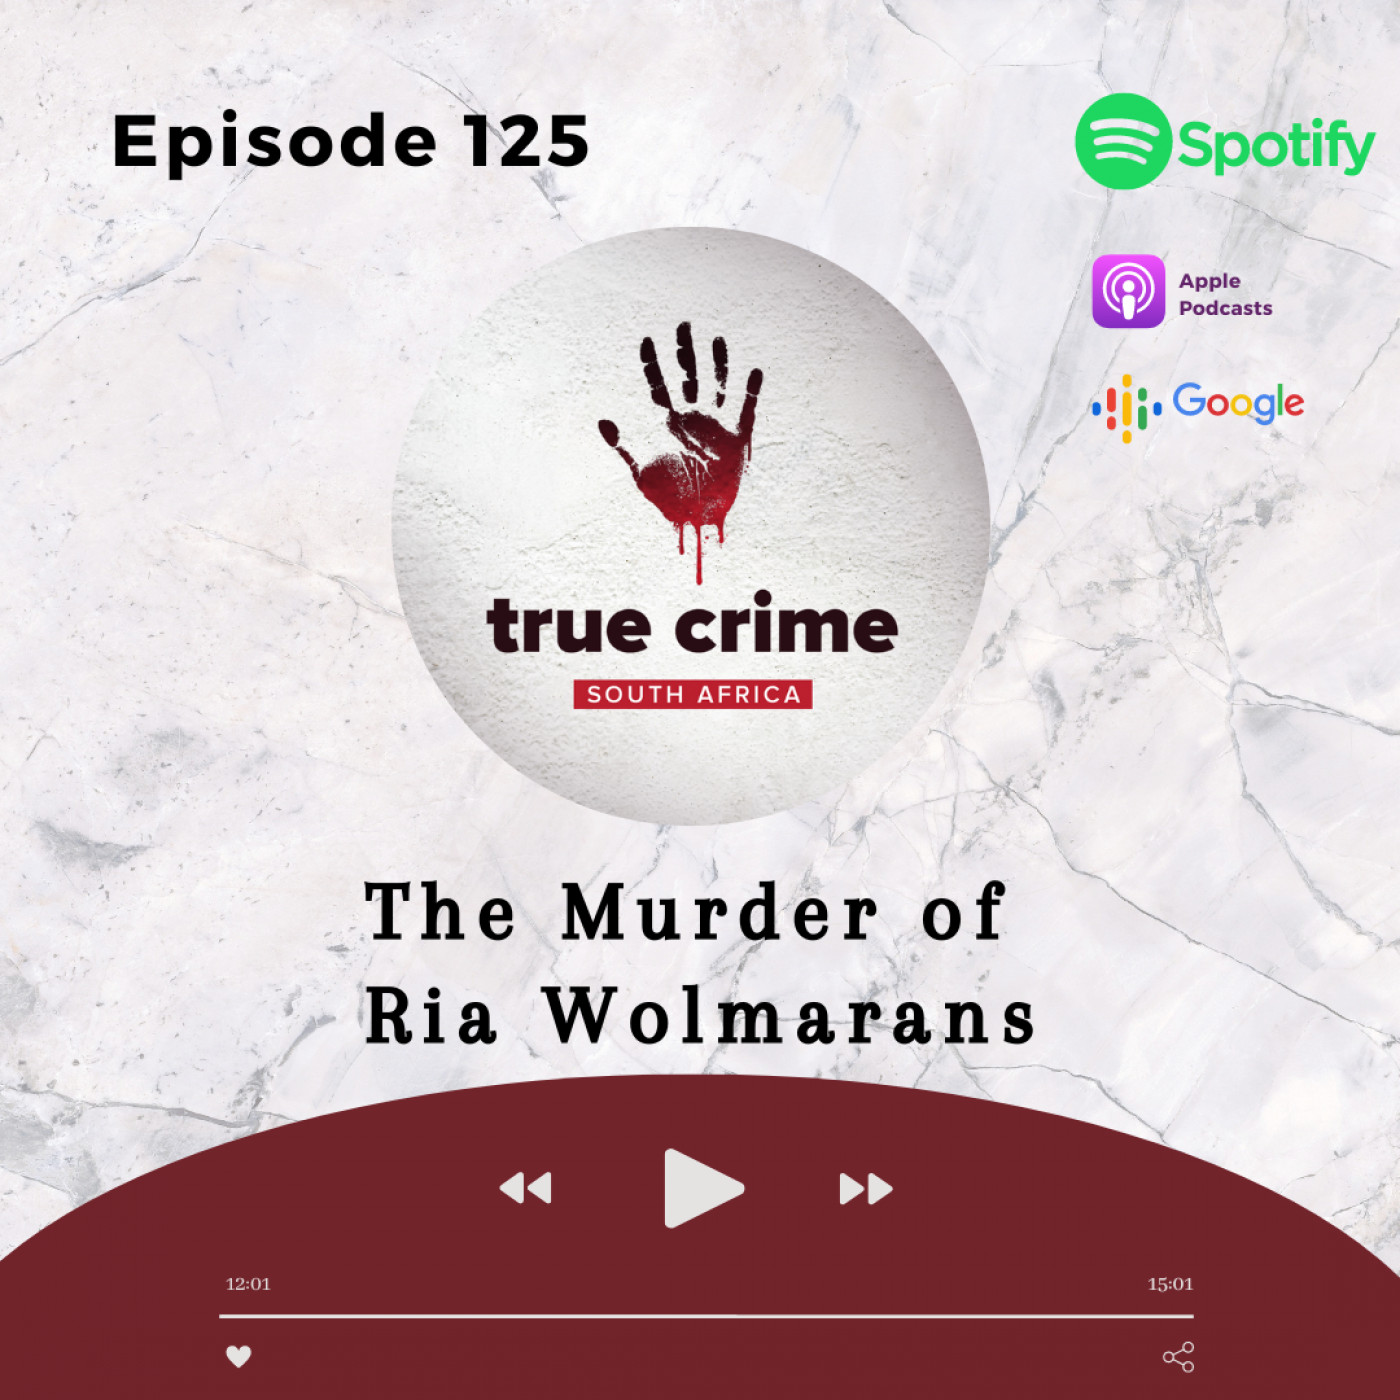 Episode 125 The Murder of Ria Wolmarans